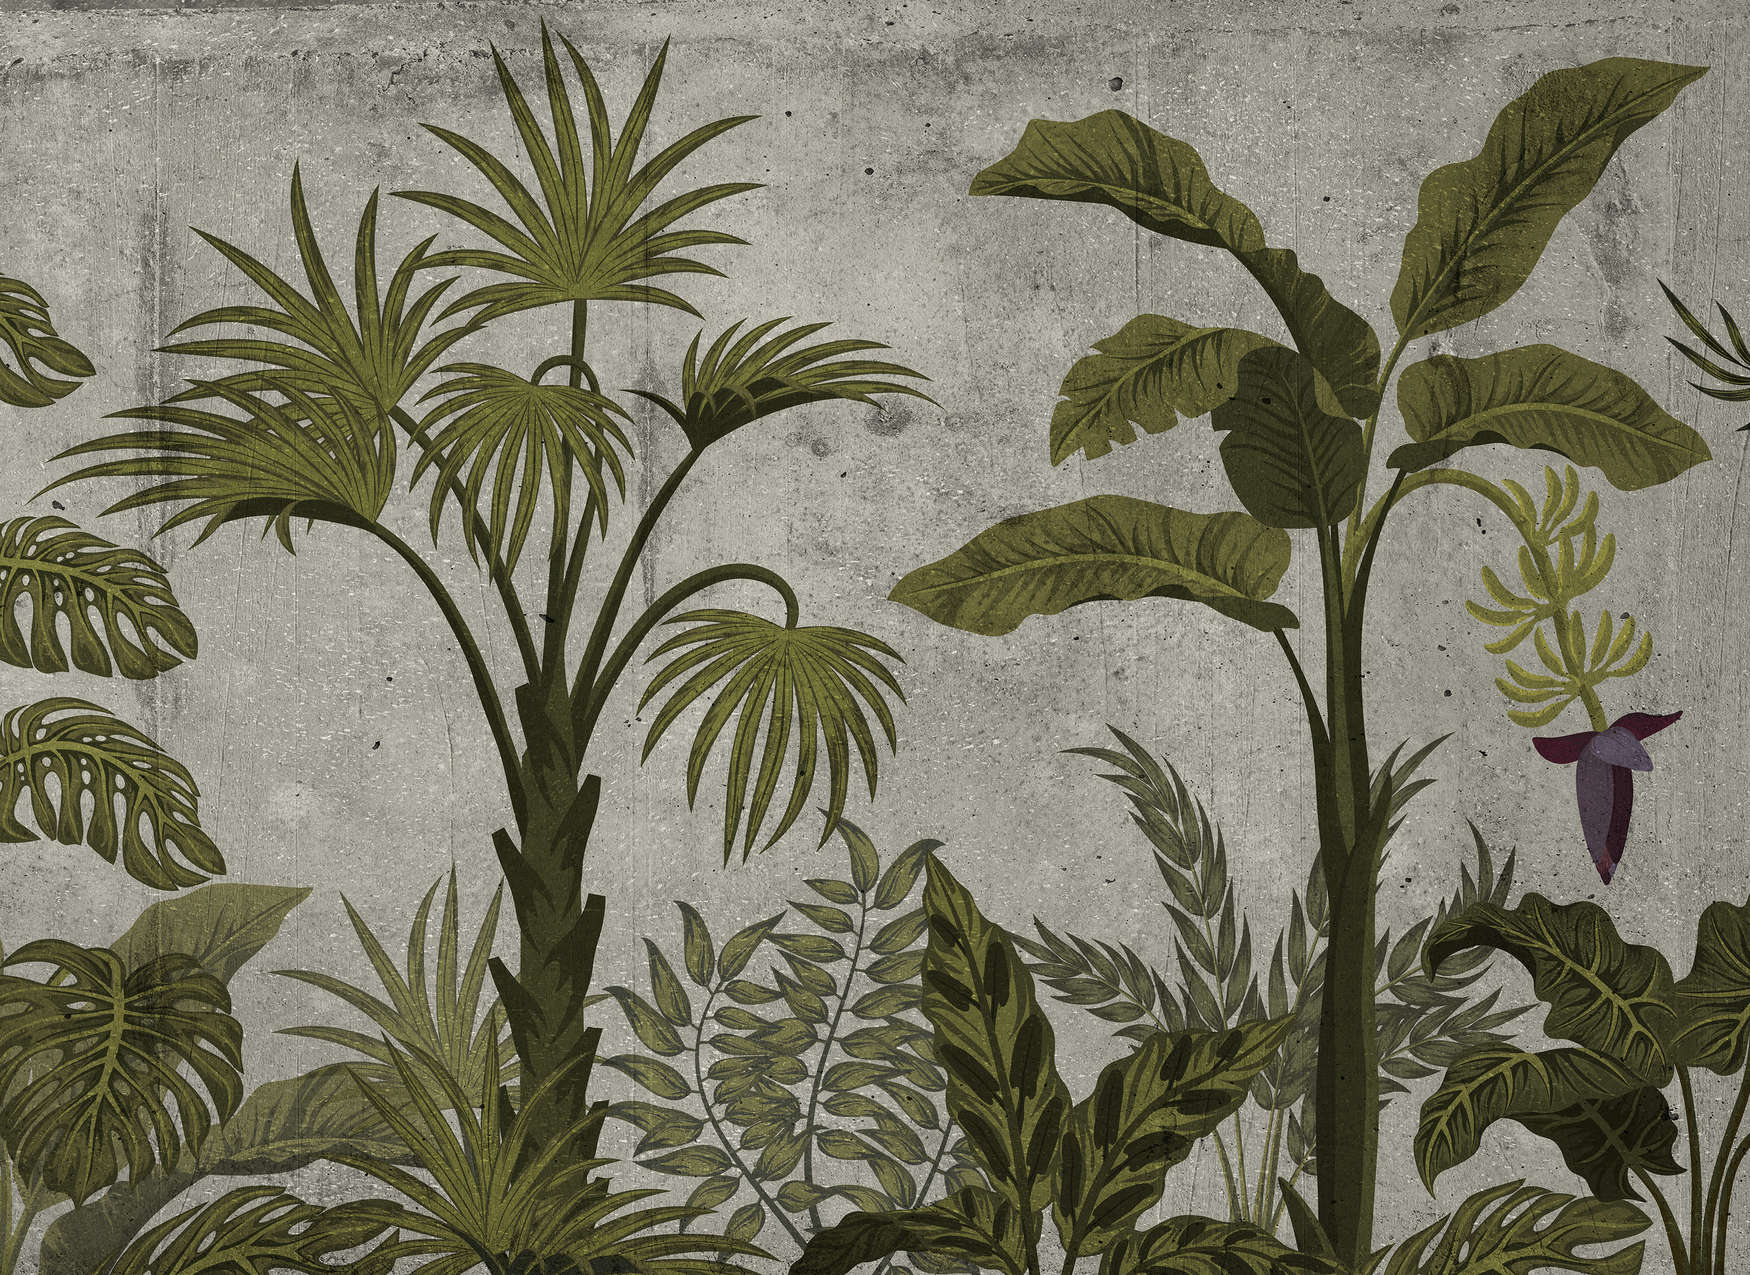             Digital behang met tropisch landschap op betonlook - groen, grijs
        